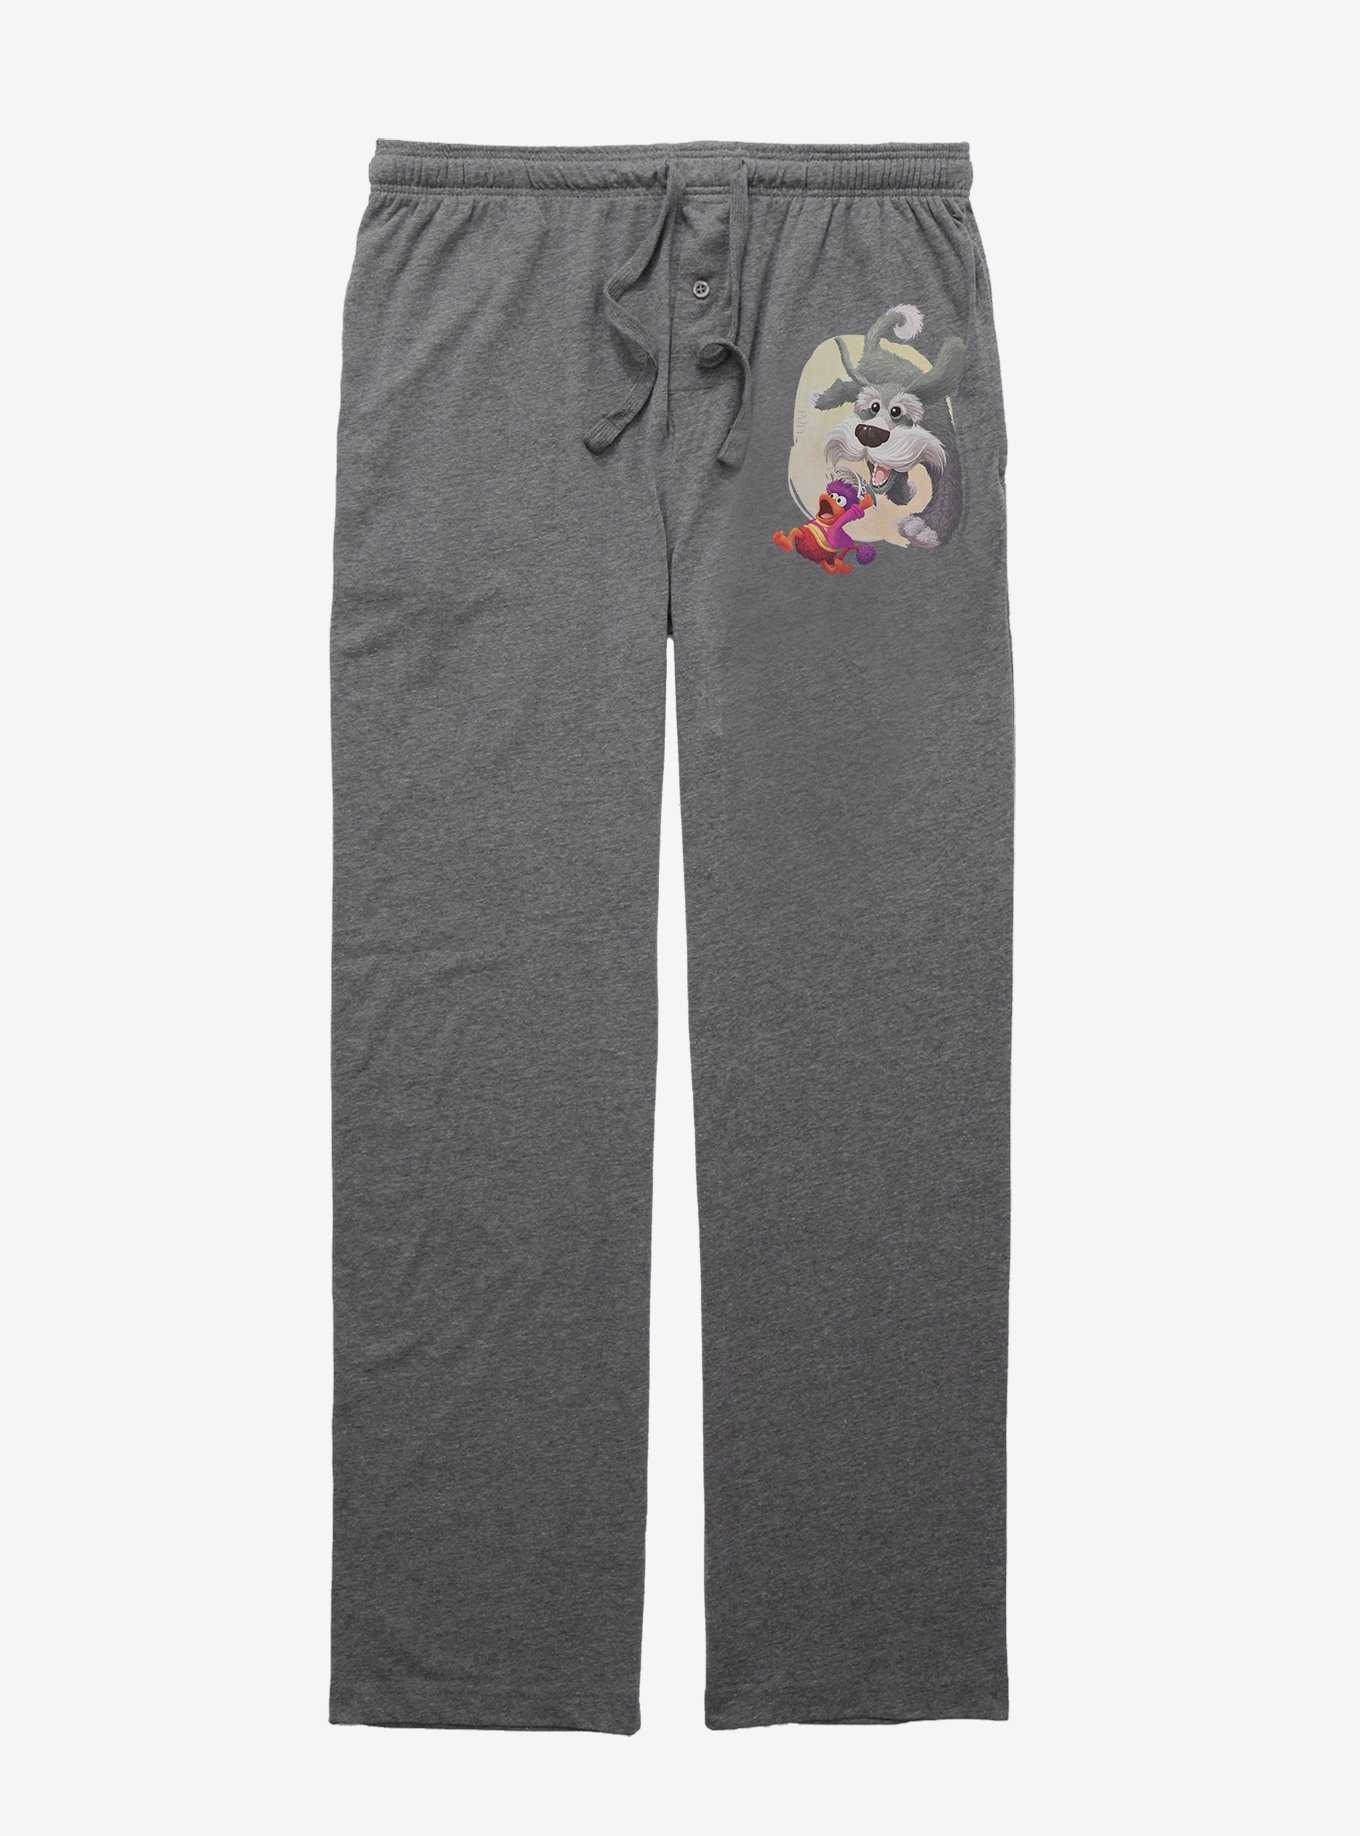 Jim Henson's Fraggle Rock Run Away Pajama Pants, , hi-res